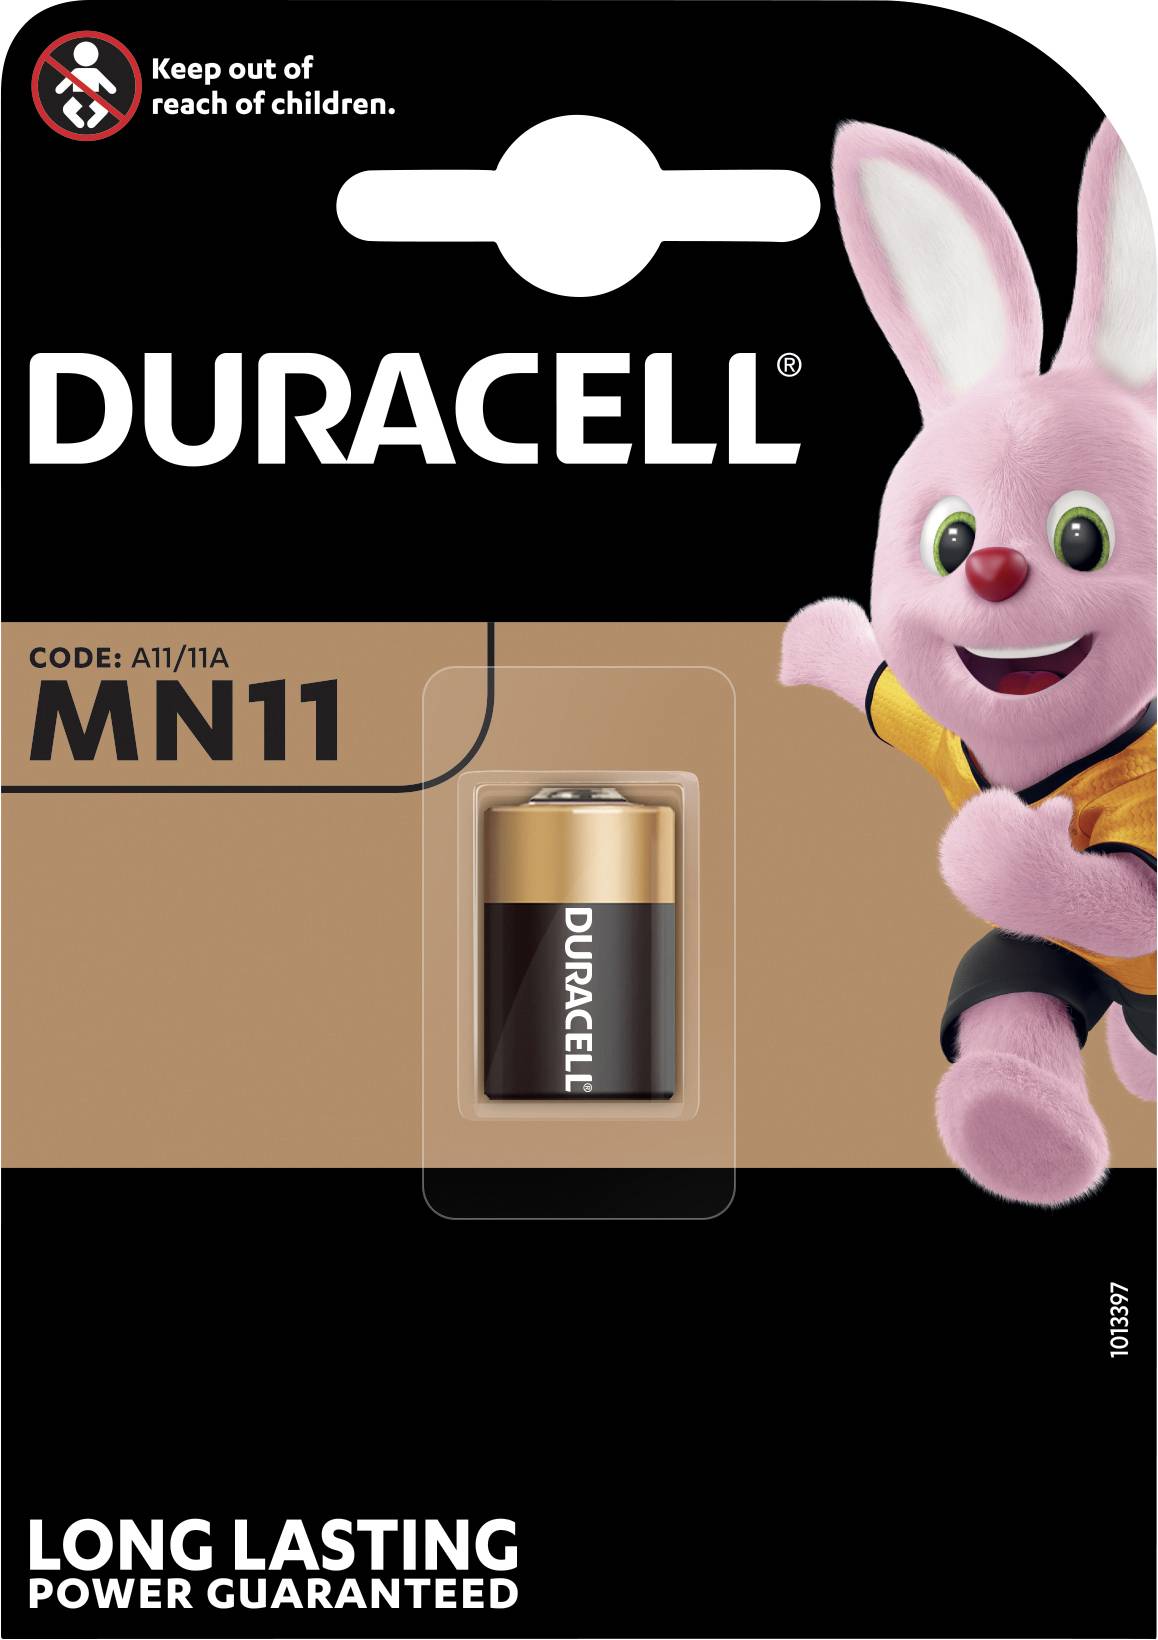 Duracell Duracell Batterie Mn11 Fotobatterie 6,0 V 15142 5000394015142 